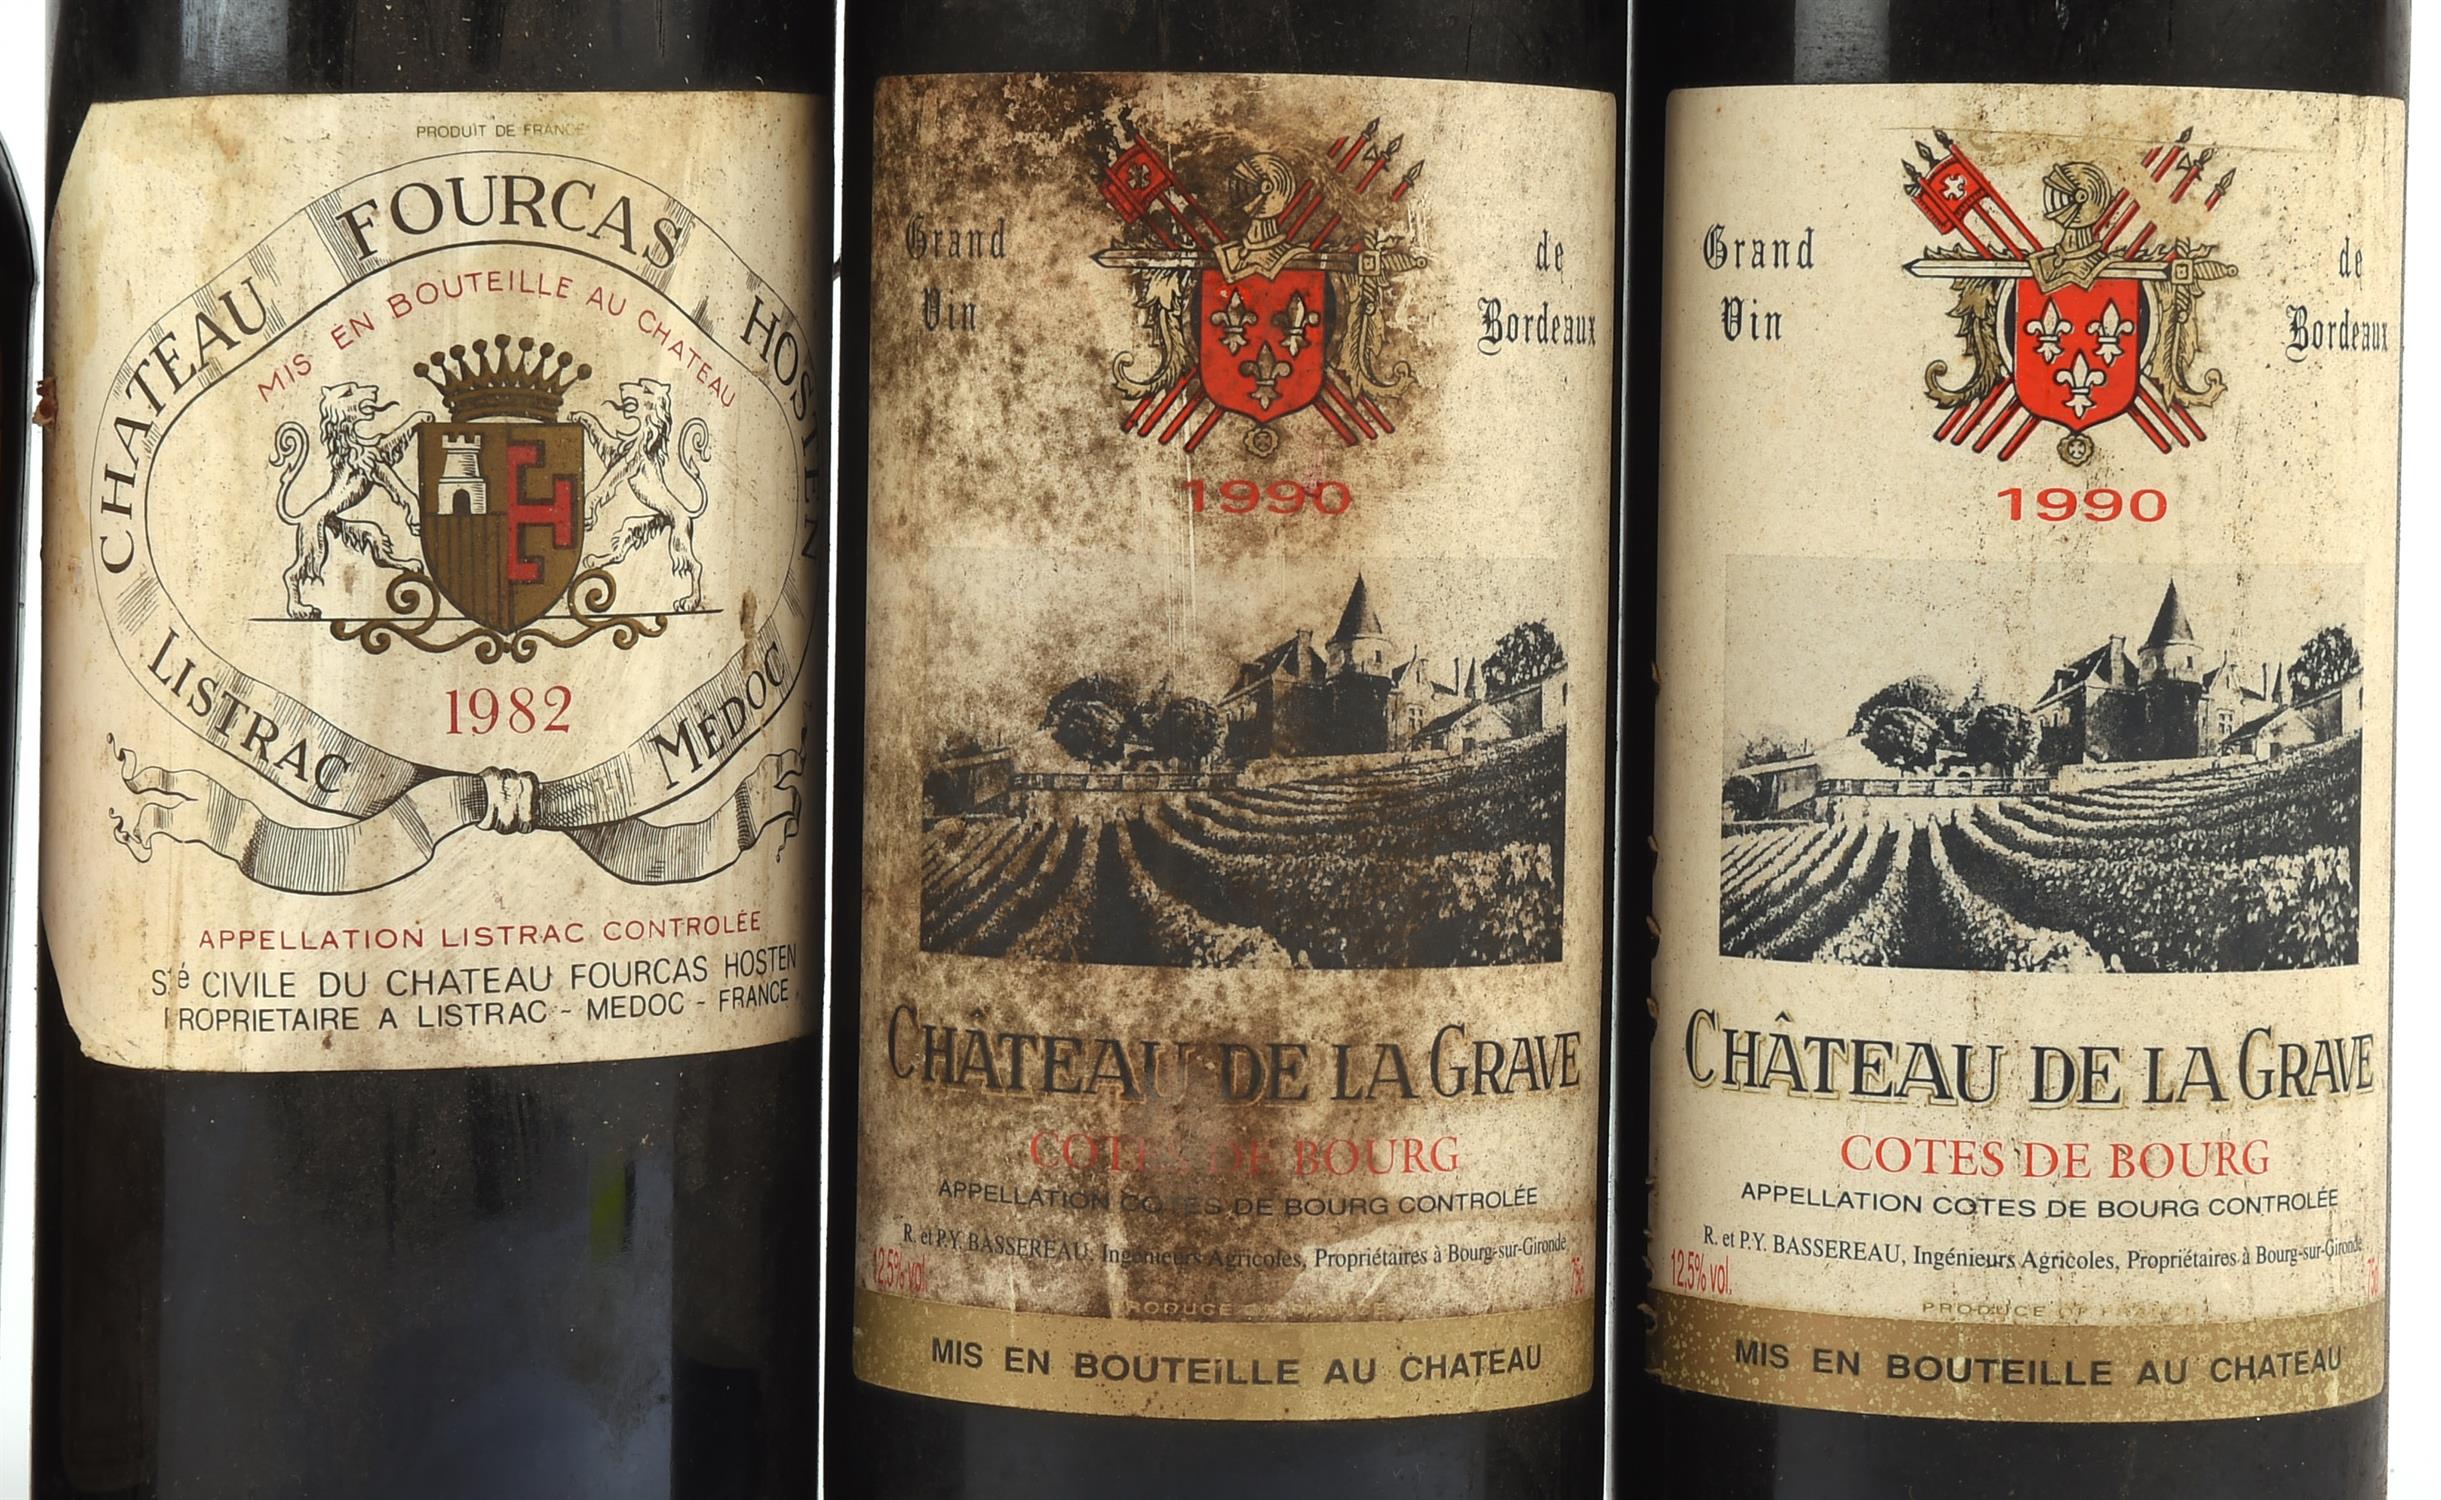 Bordeaux wines, Chateau de la Graves, Cotes de Bourg 1990, three bottles, Chateau Vieux Bonneau - Image 7 of 8